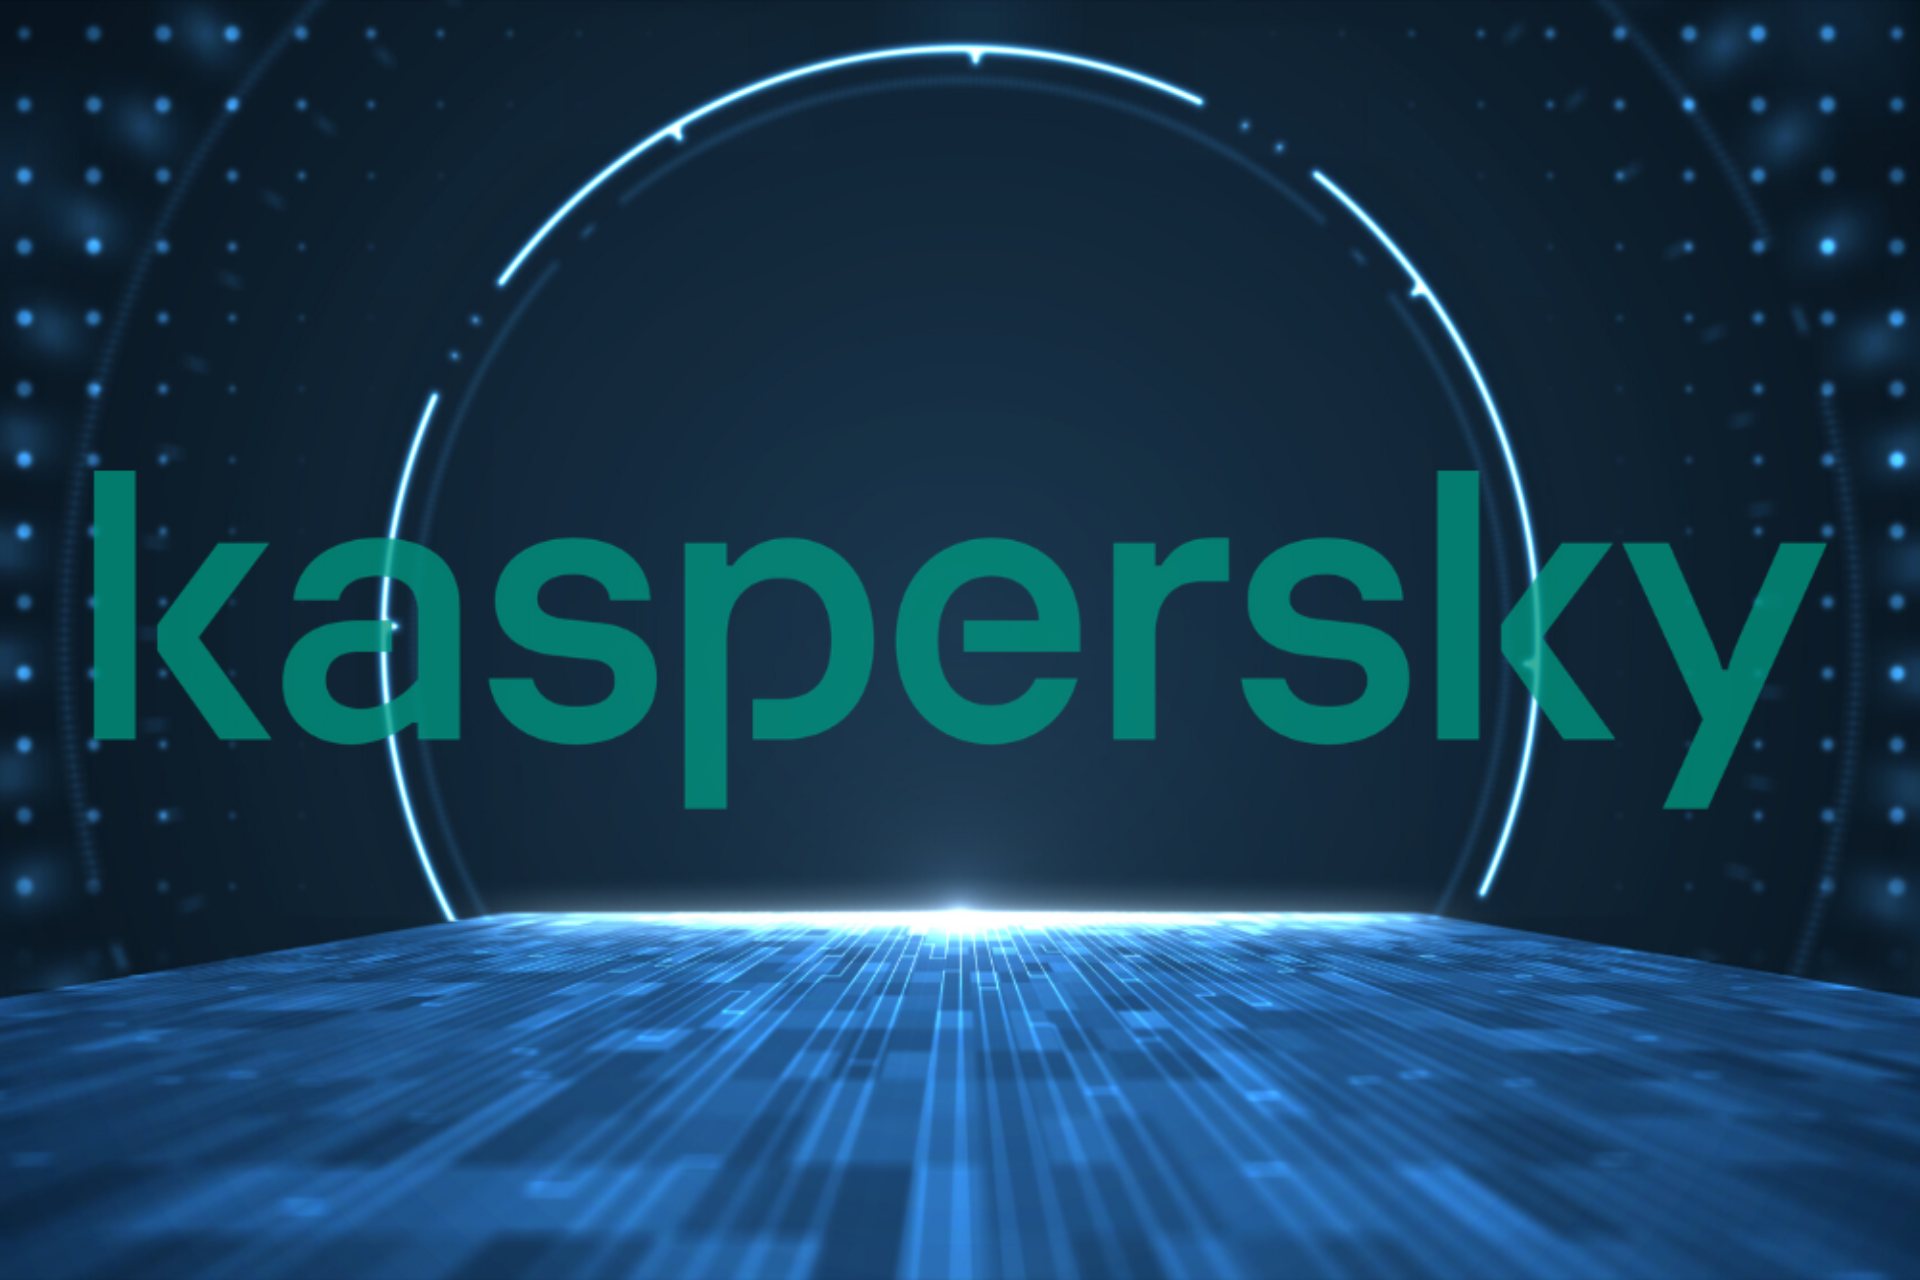 Kaspersky 1080P, 2K, 4K, 5K HD wallpapers free download | Wallpaper Flare